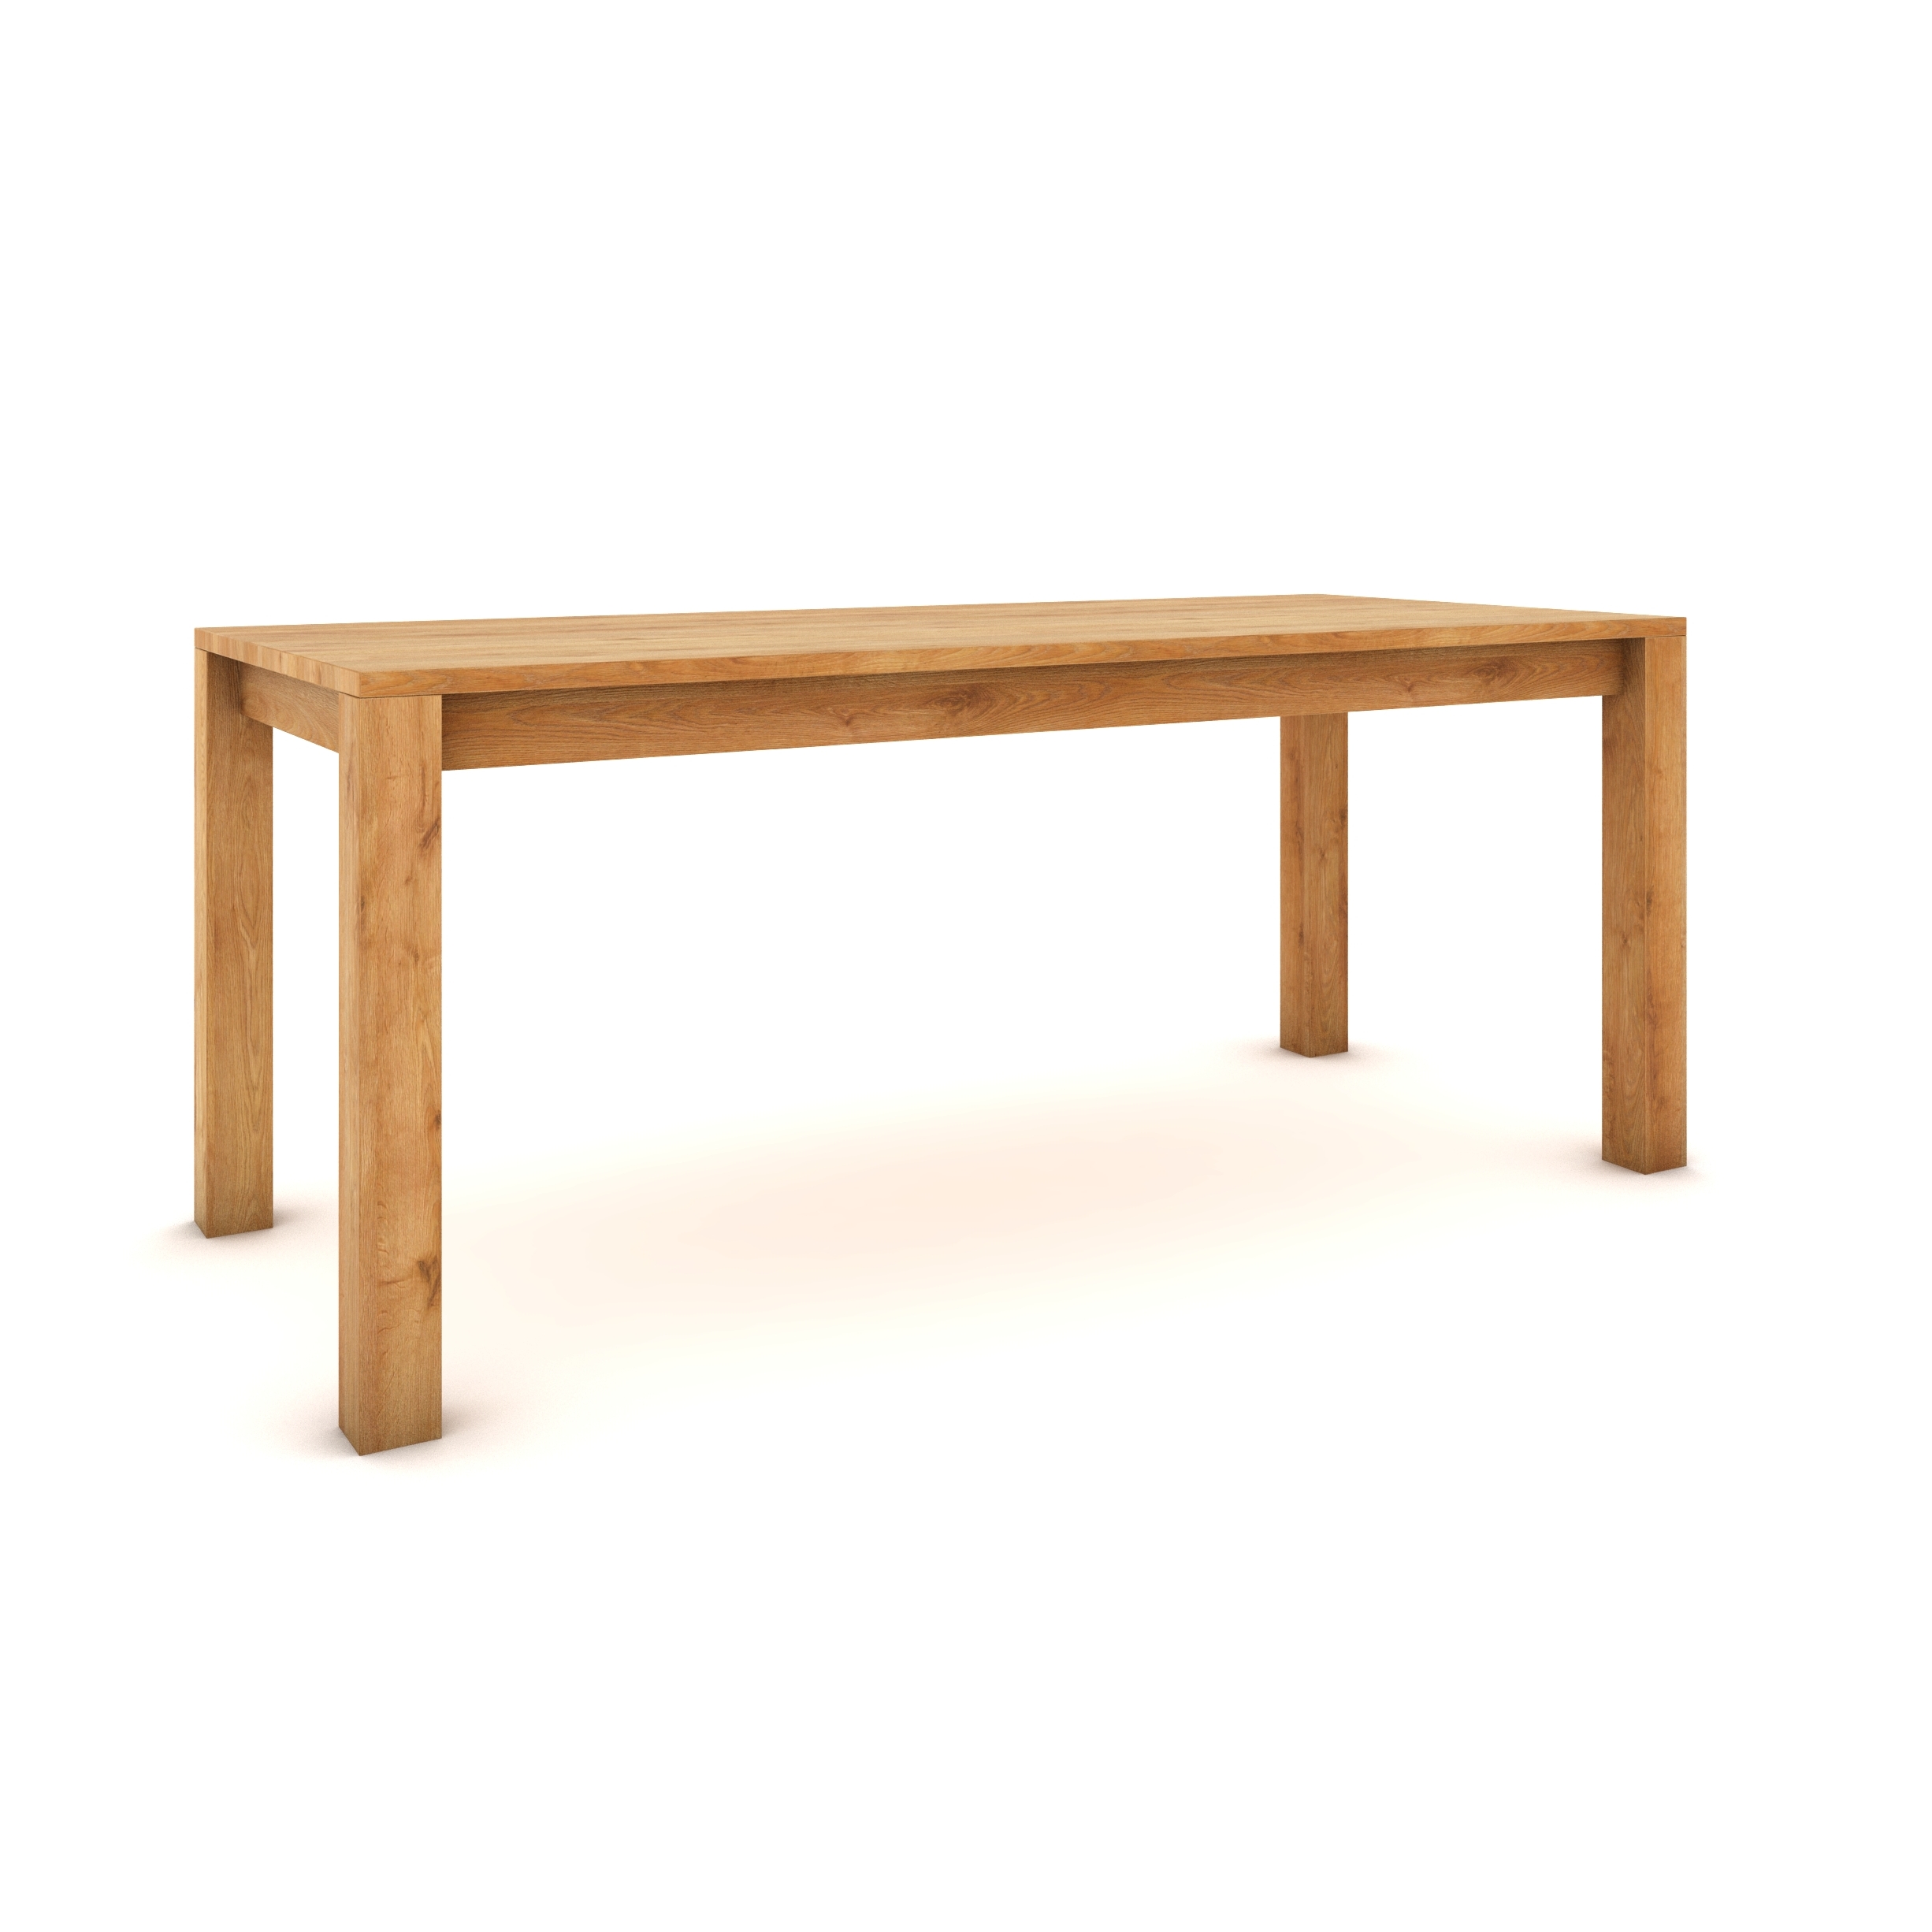 Dubový stůl 180 x 80 cm , přírodní, hedvábně polomatný